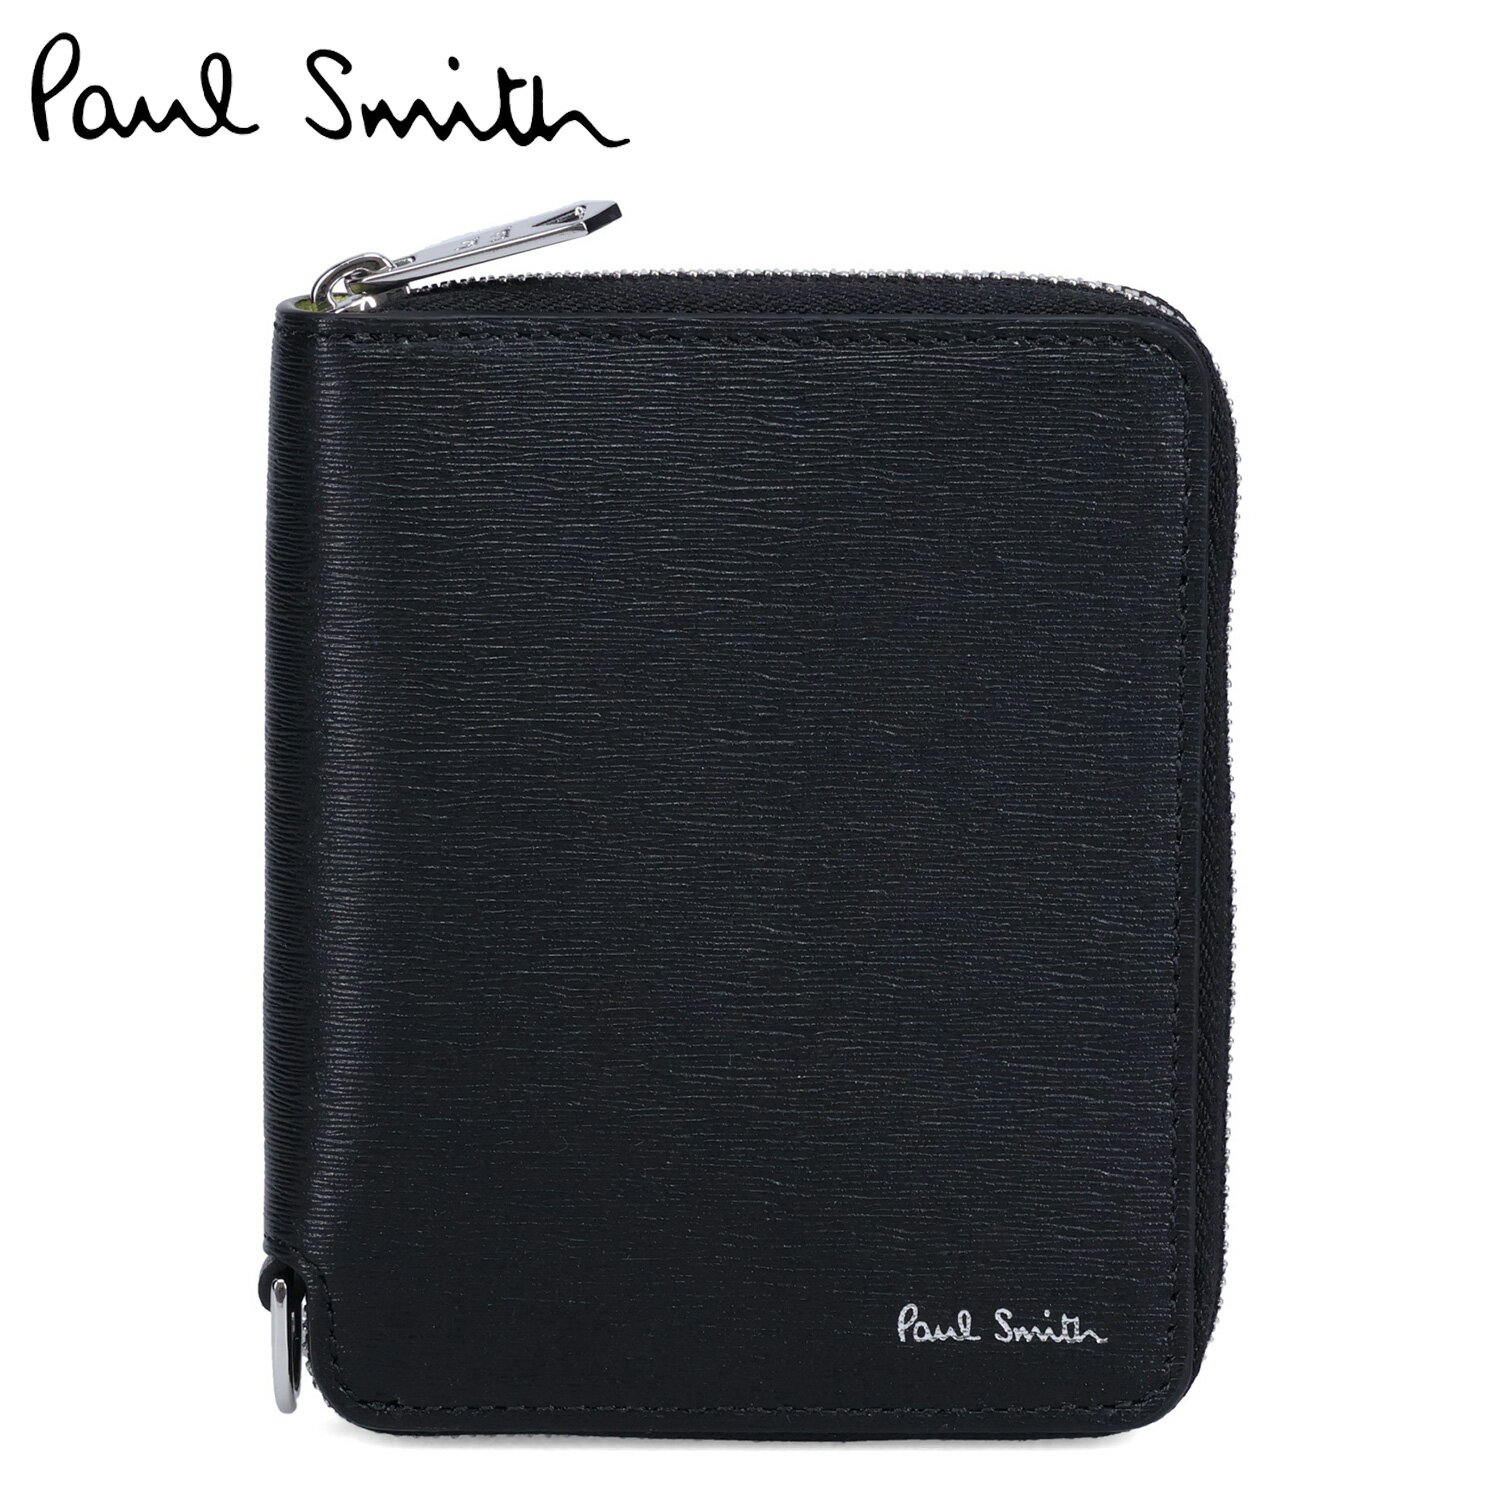 ポール・スミス 革財布 メンズ Paul Smith WALLET ZIP BFOLD ポールスミス 財布 二つ折り財布 メンズ 本革 ラウンドファスナー ブラック 黒 M1A-6702-KSTRGS